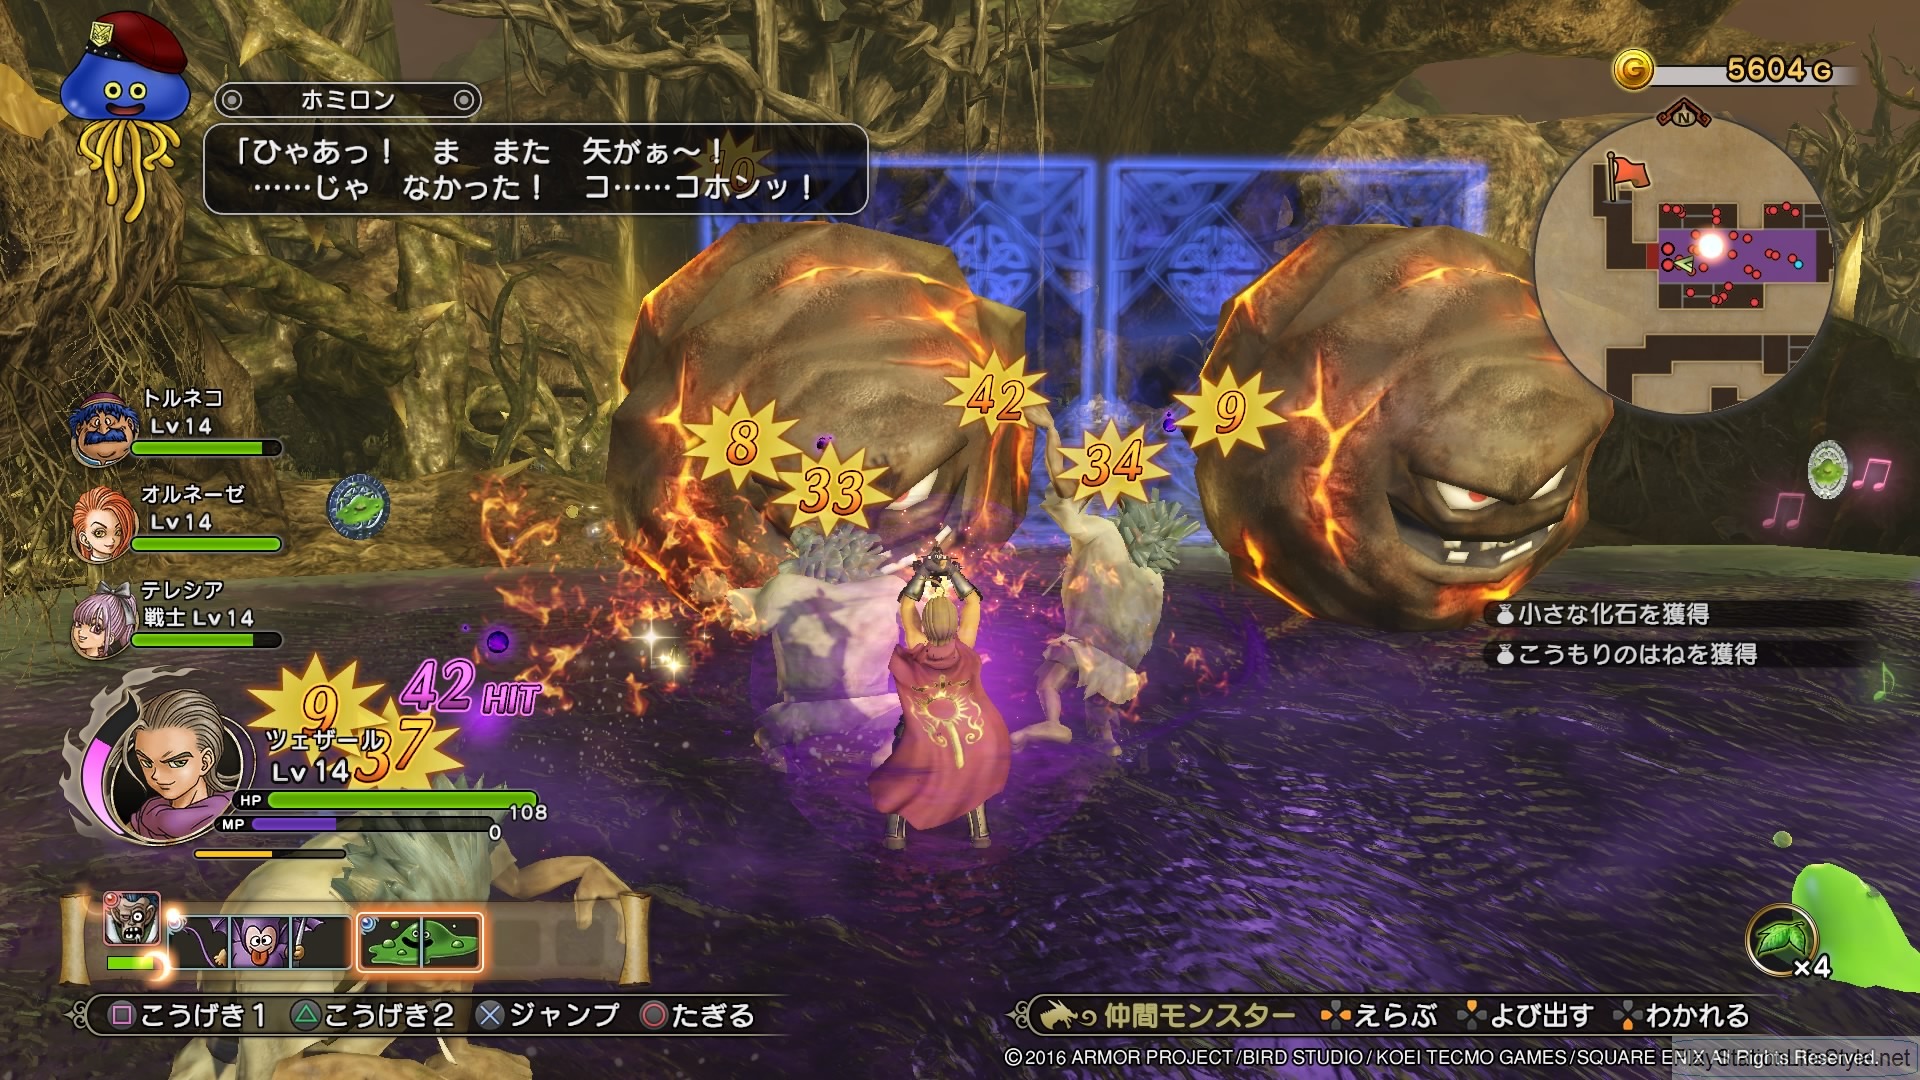 Jogo Dragon Quest Heroes II PS4 Square Enix com o Melhor Preço é no Zoom